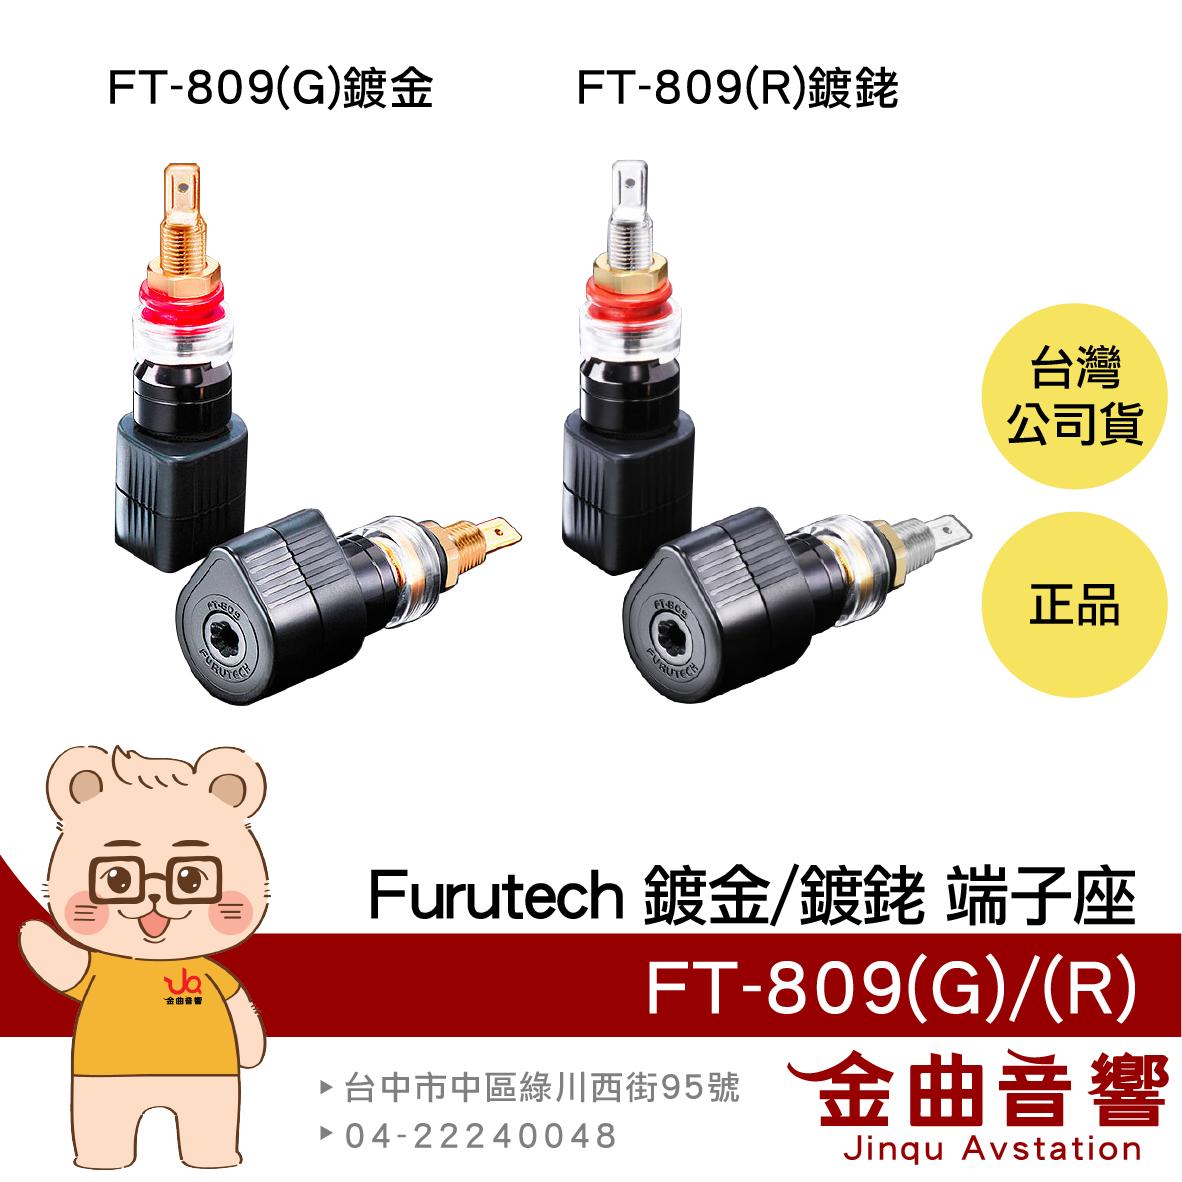 FURUTECH 古河 FT-809(G) FT-809(R) 鍍金 鍍銠 扭矩保護 喇叭 端子座 | 金曲音響